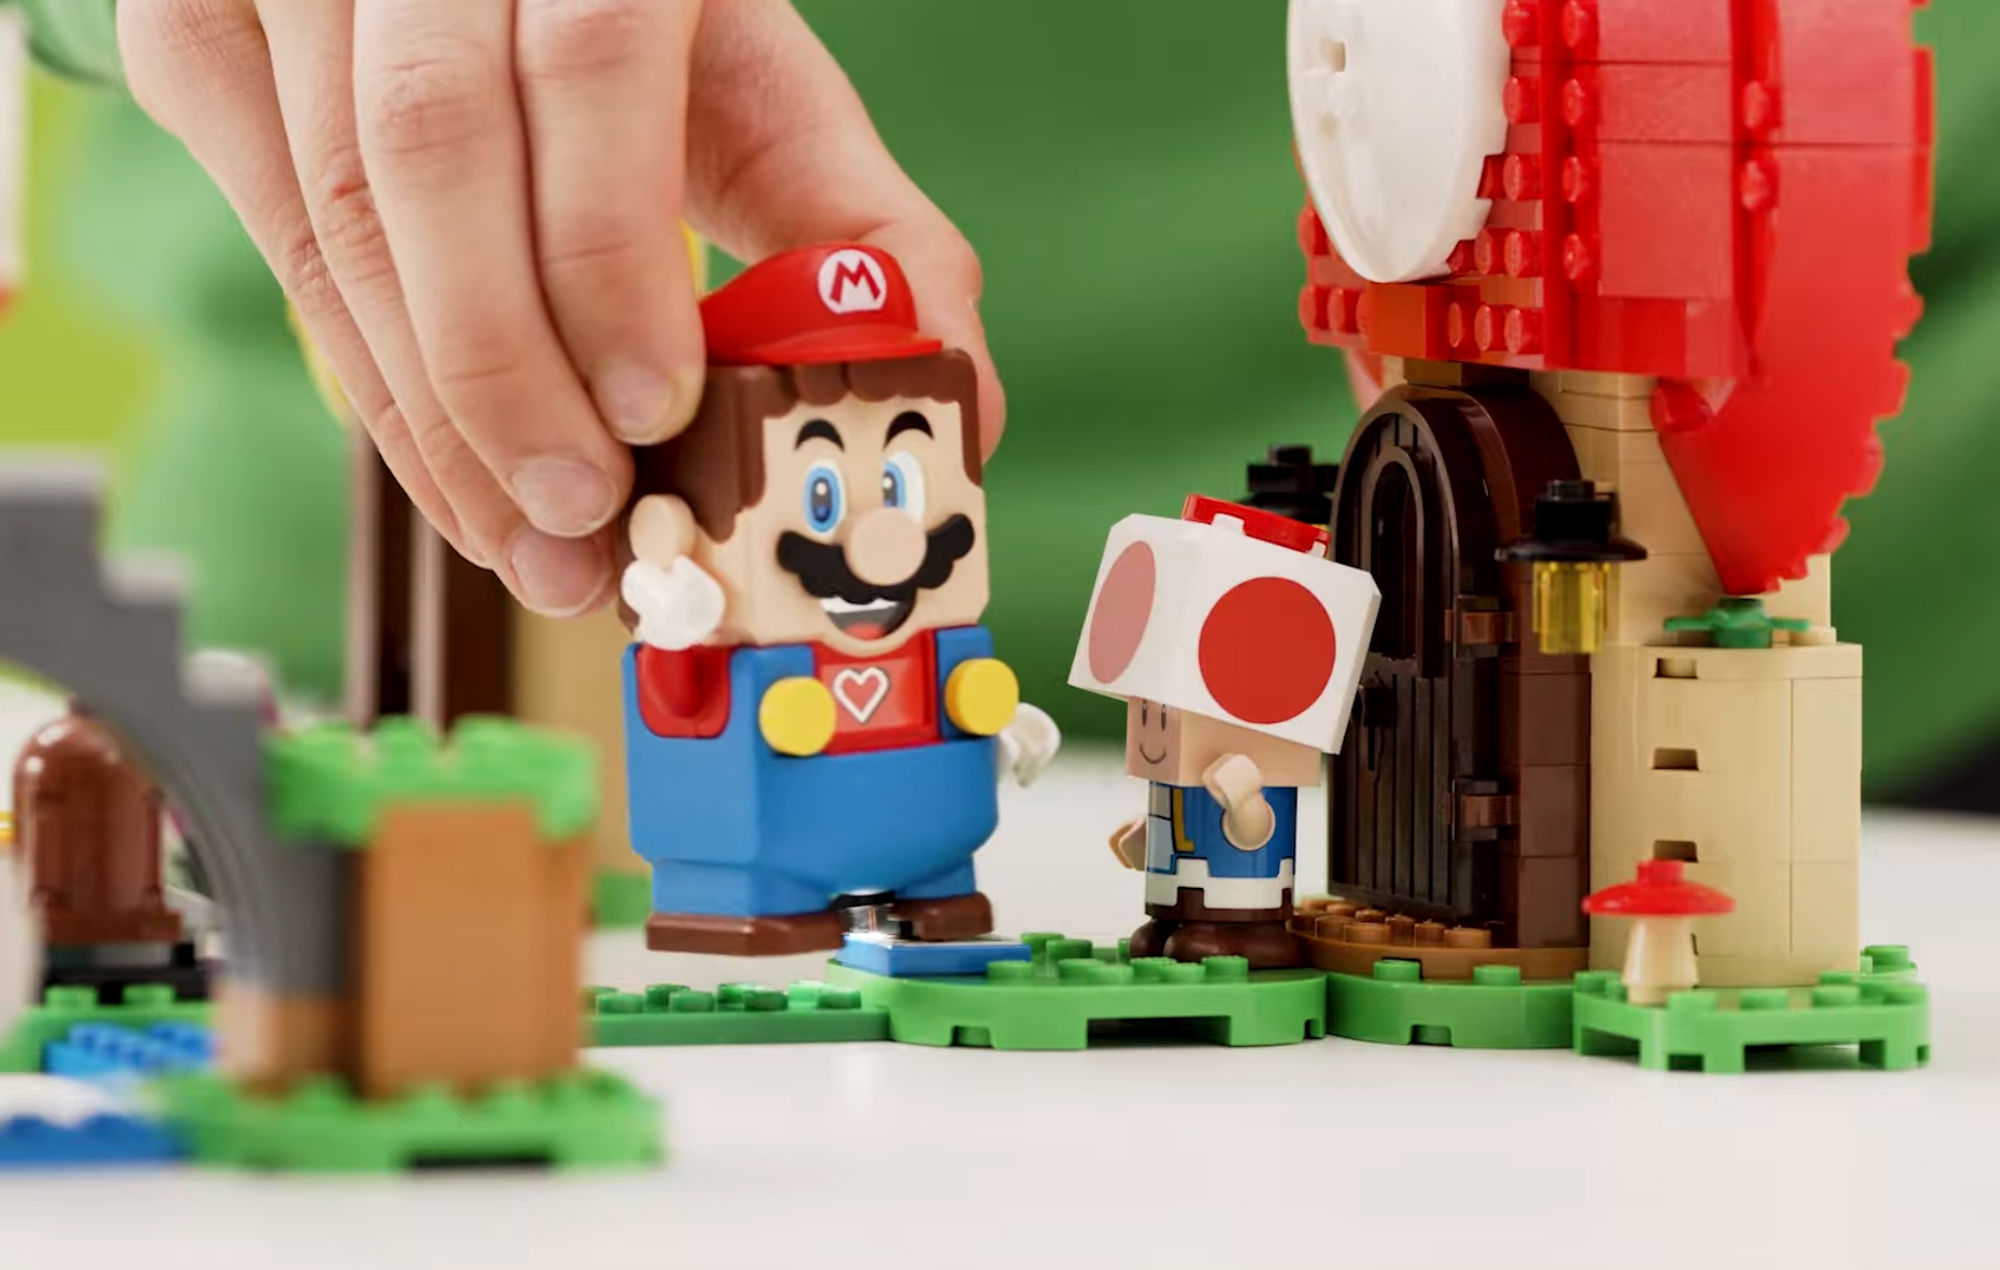 O Mario virou lego!